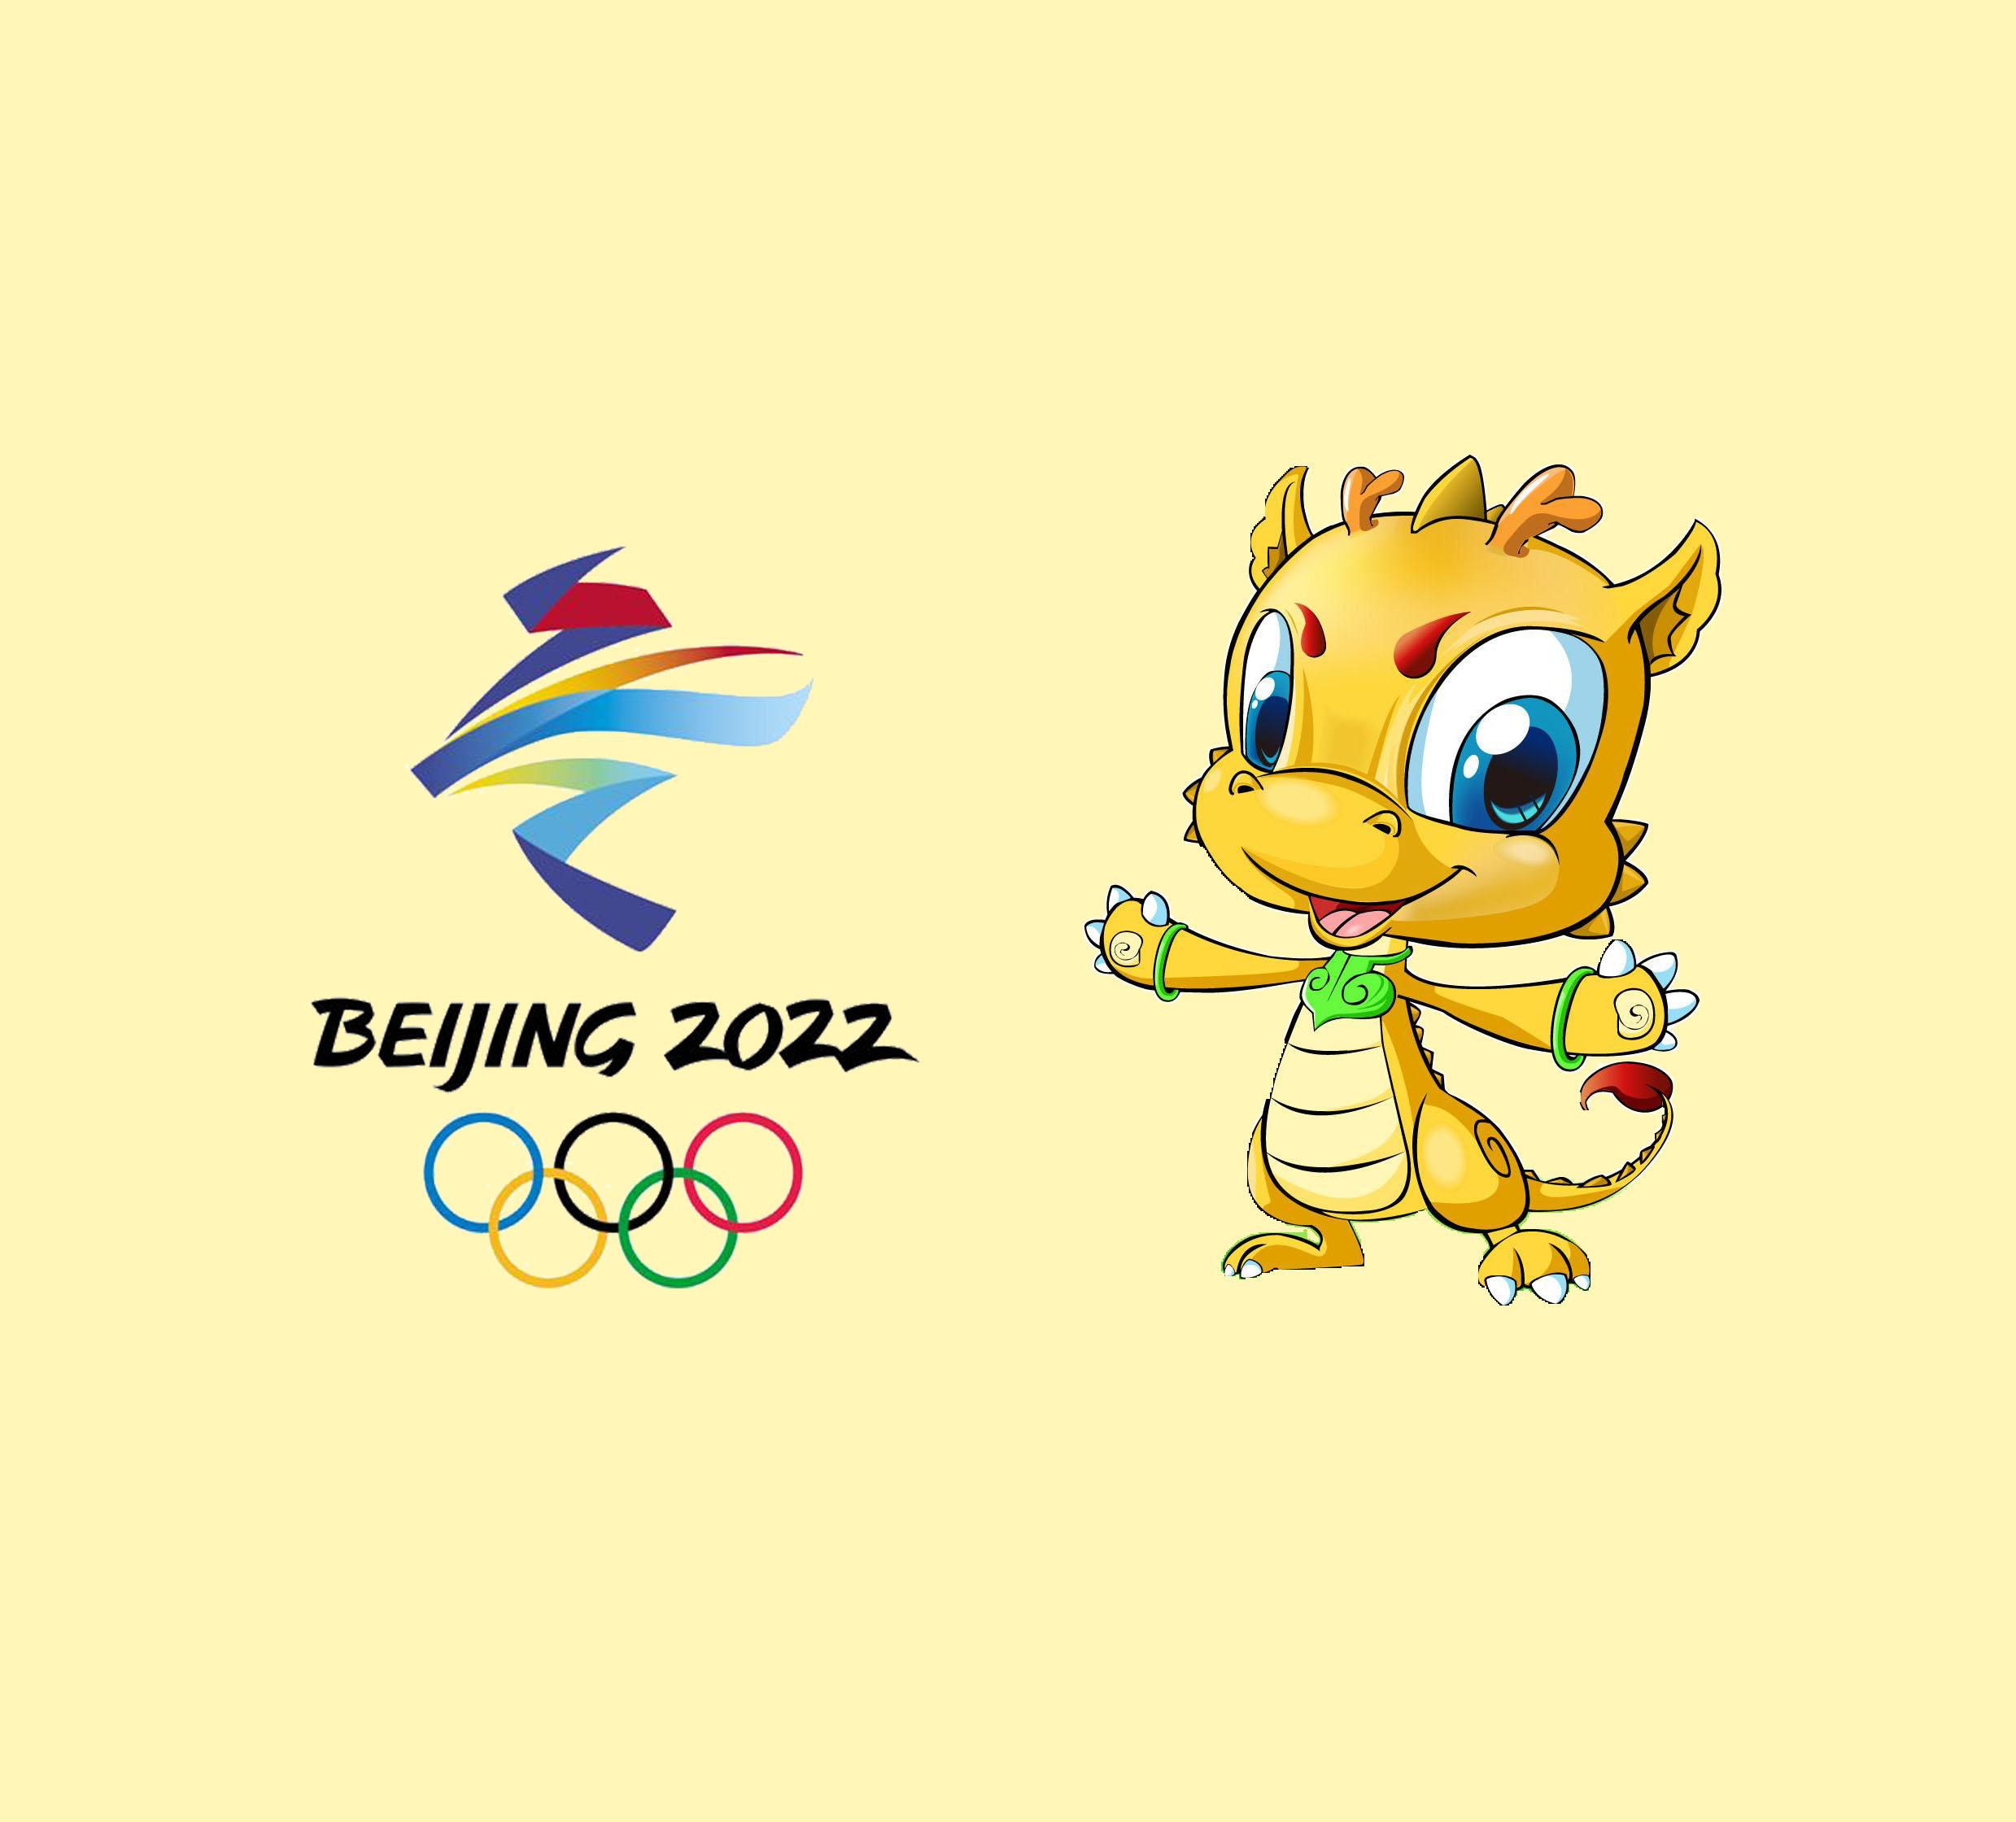 2022冬奥会卡通形象图片